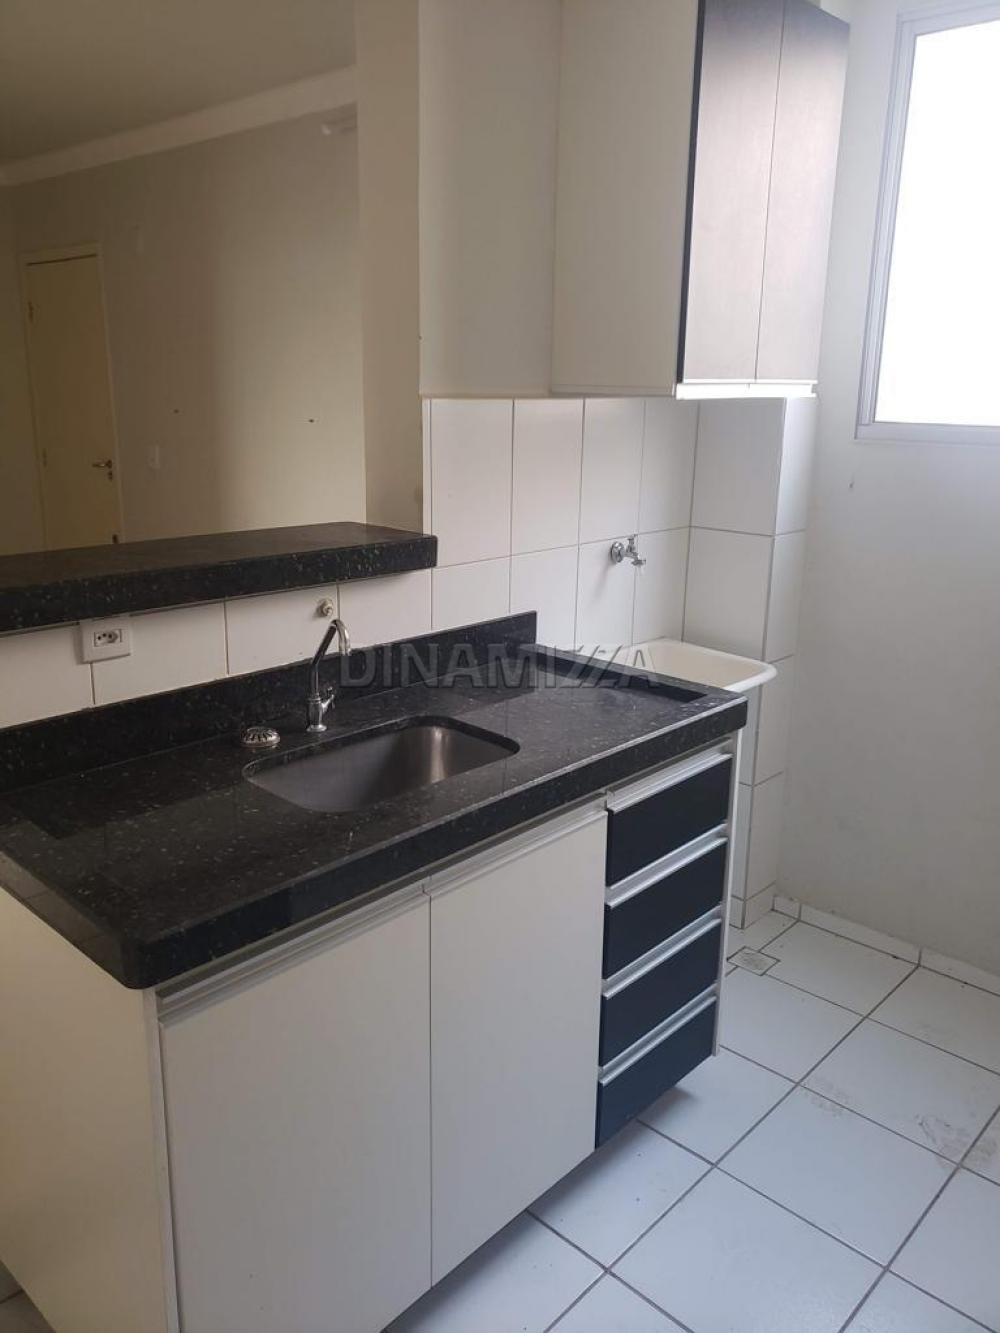 Comprar Apartamento / Padrão em Uberaba R$ 160.000,00 - Foto 3